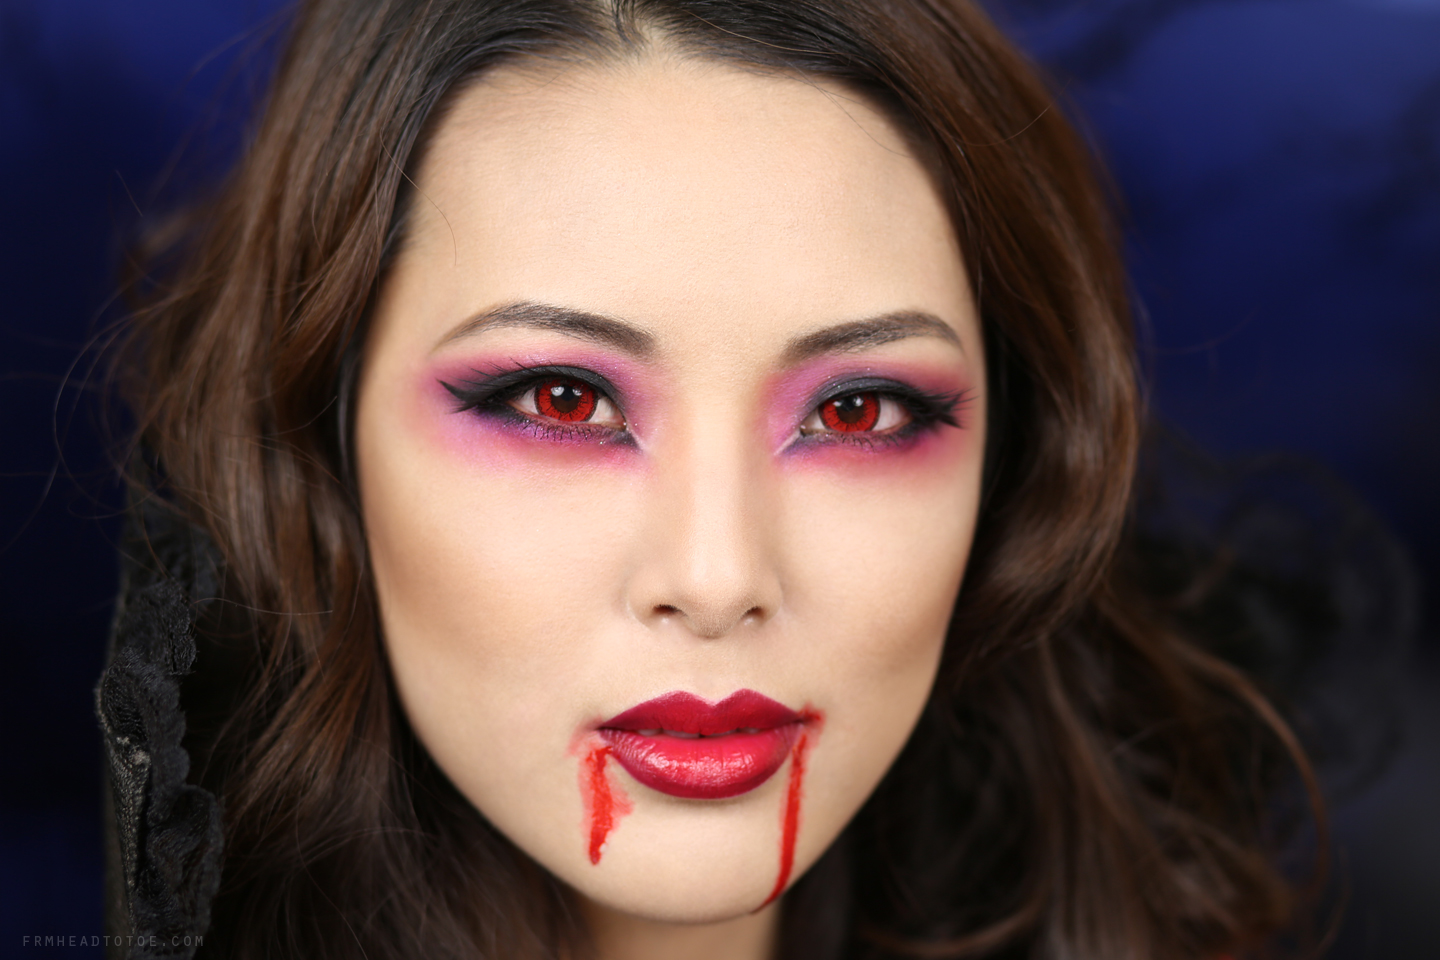 Как сделать макияж вампира: 3 видео-урока